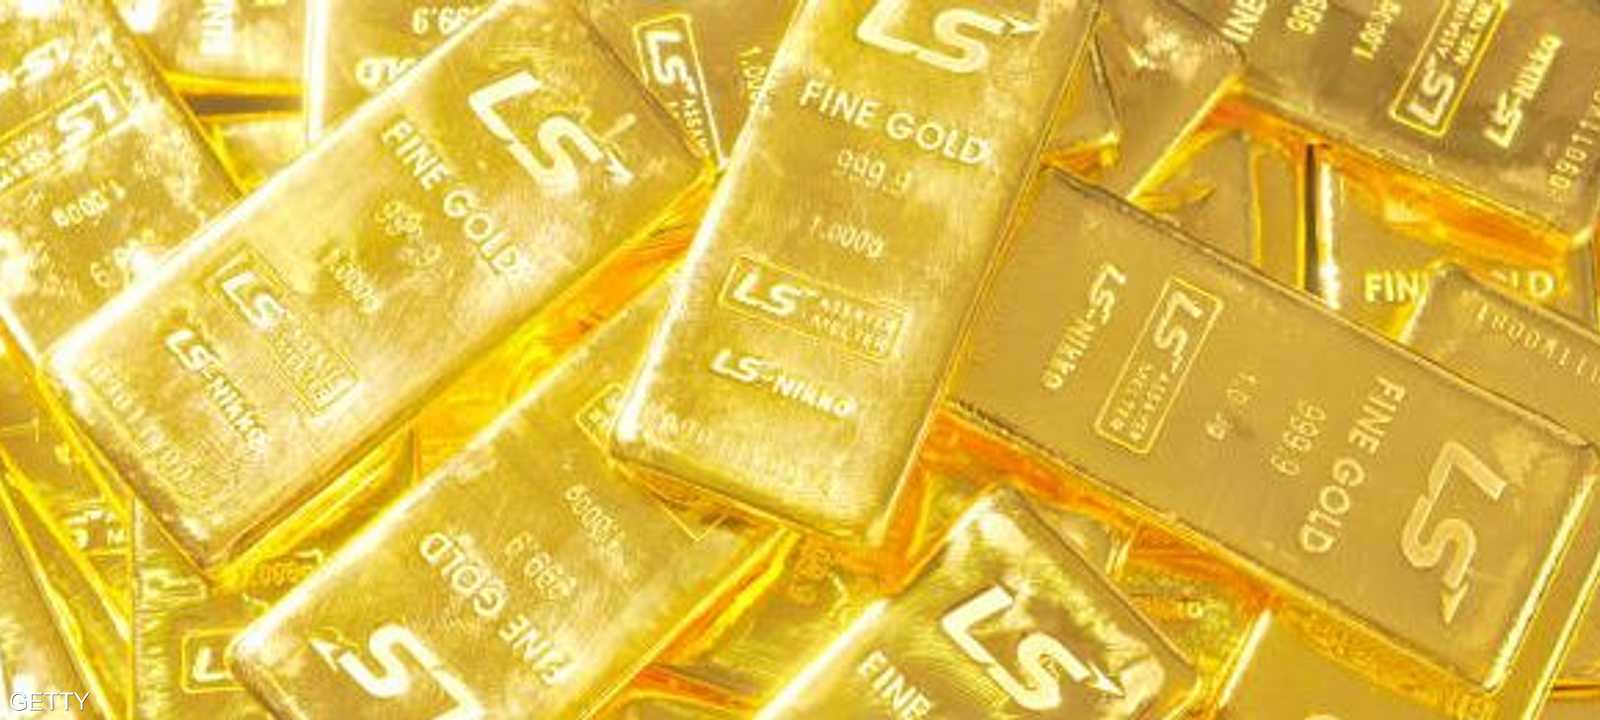 زاد الذهب نحو 17 في المئة منذ بداية العام